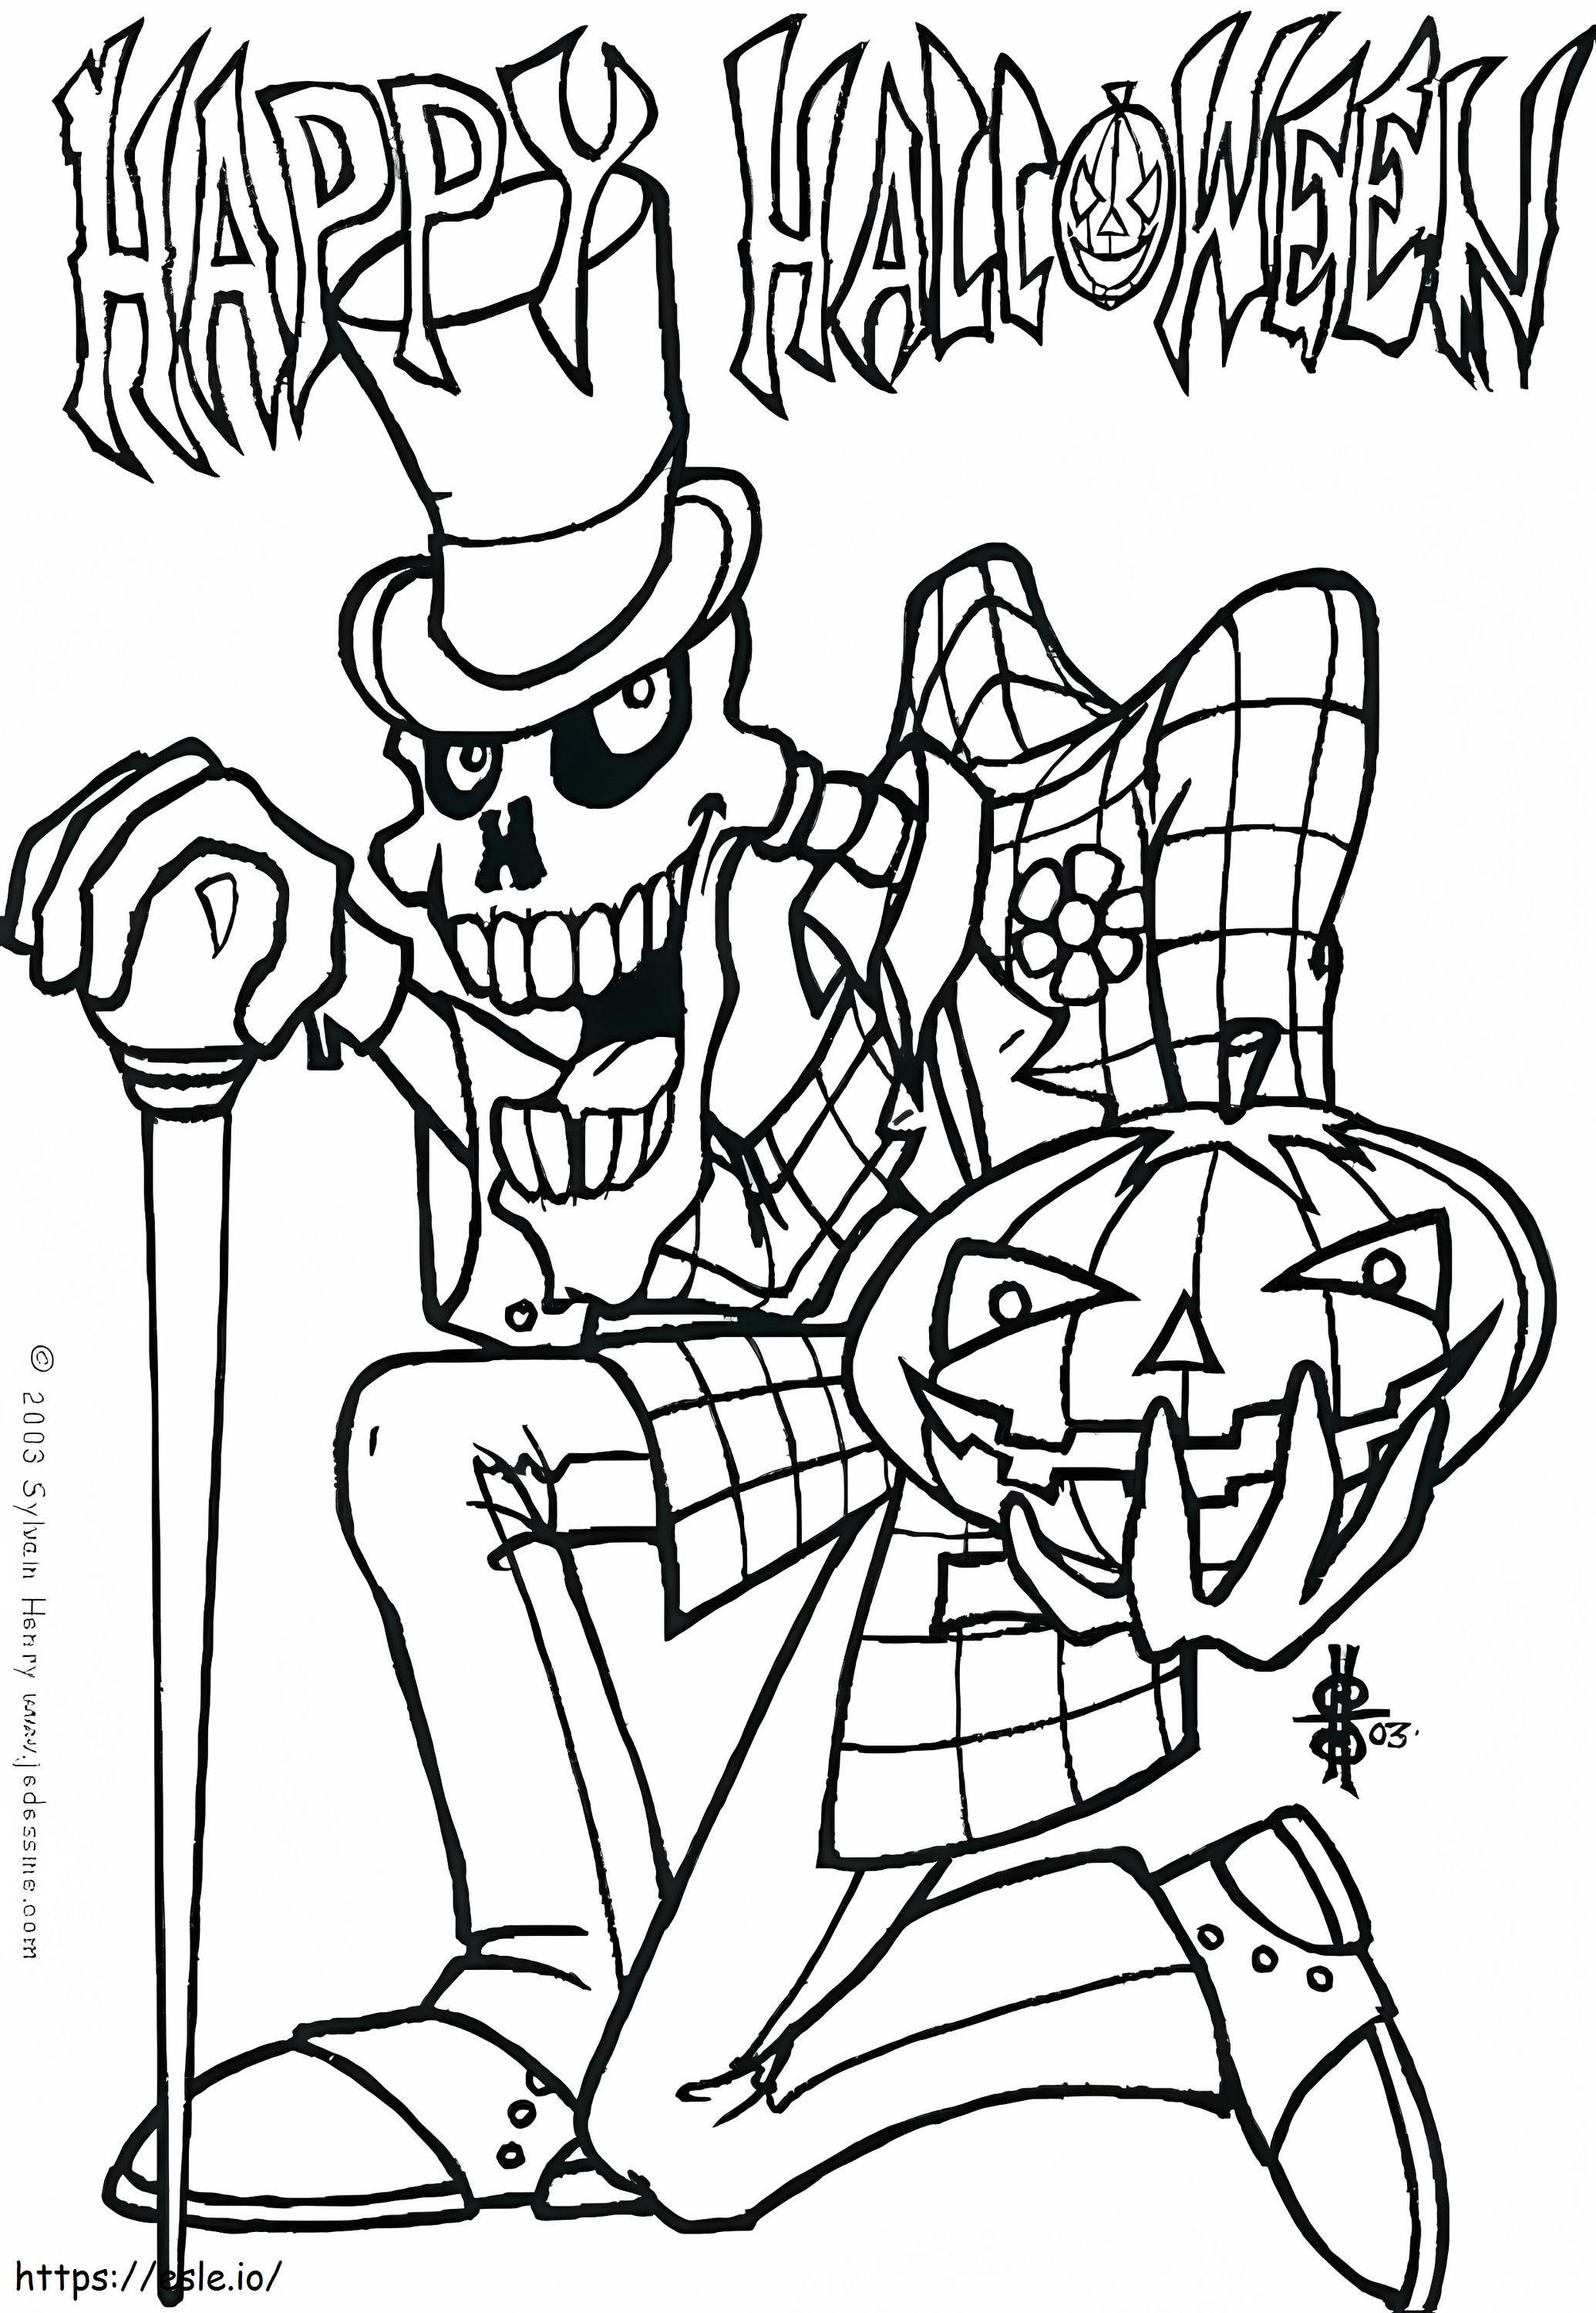  Las mejores imágenes de Halloween para imprimir en línea sobre la bruja masculina Sorprendente gratis para los niños Tarifa para colorear